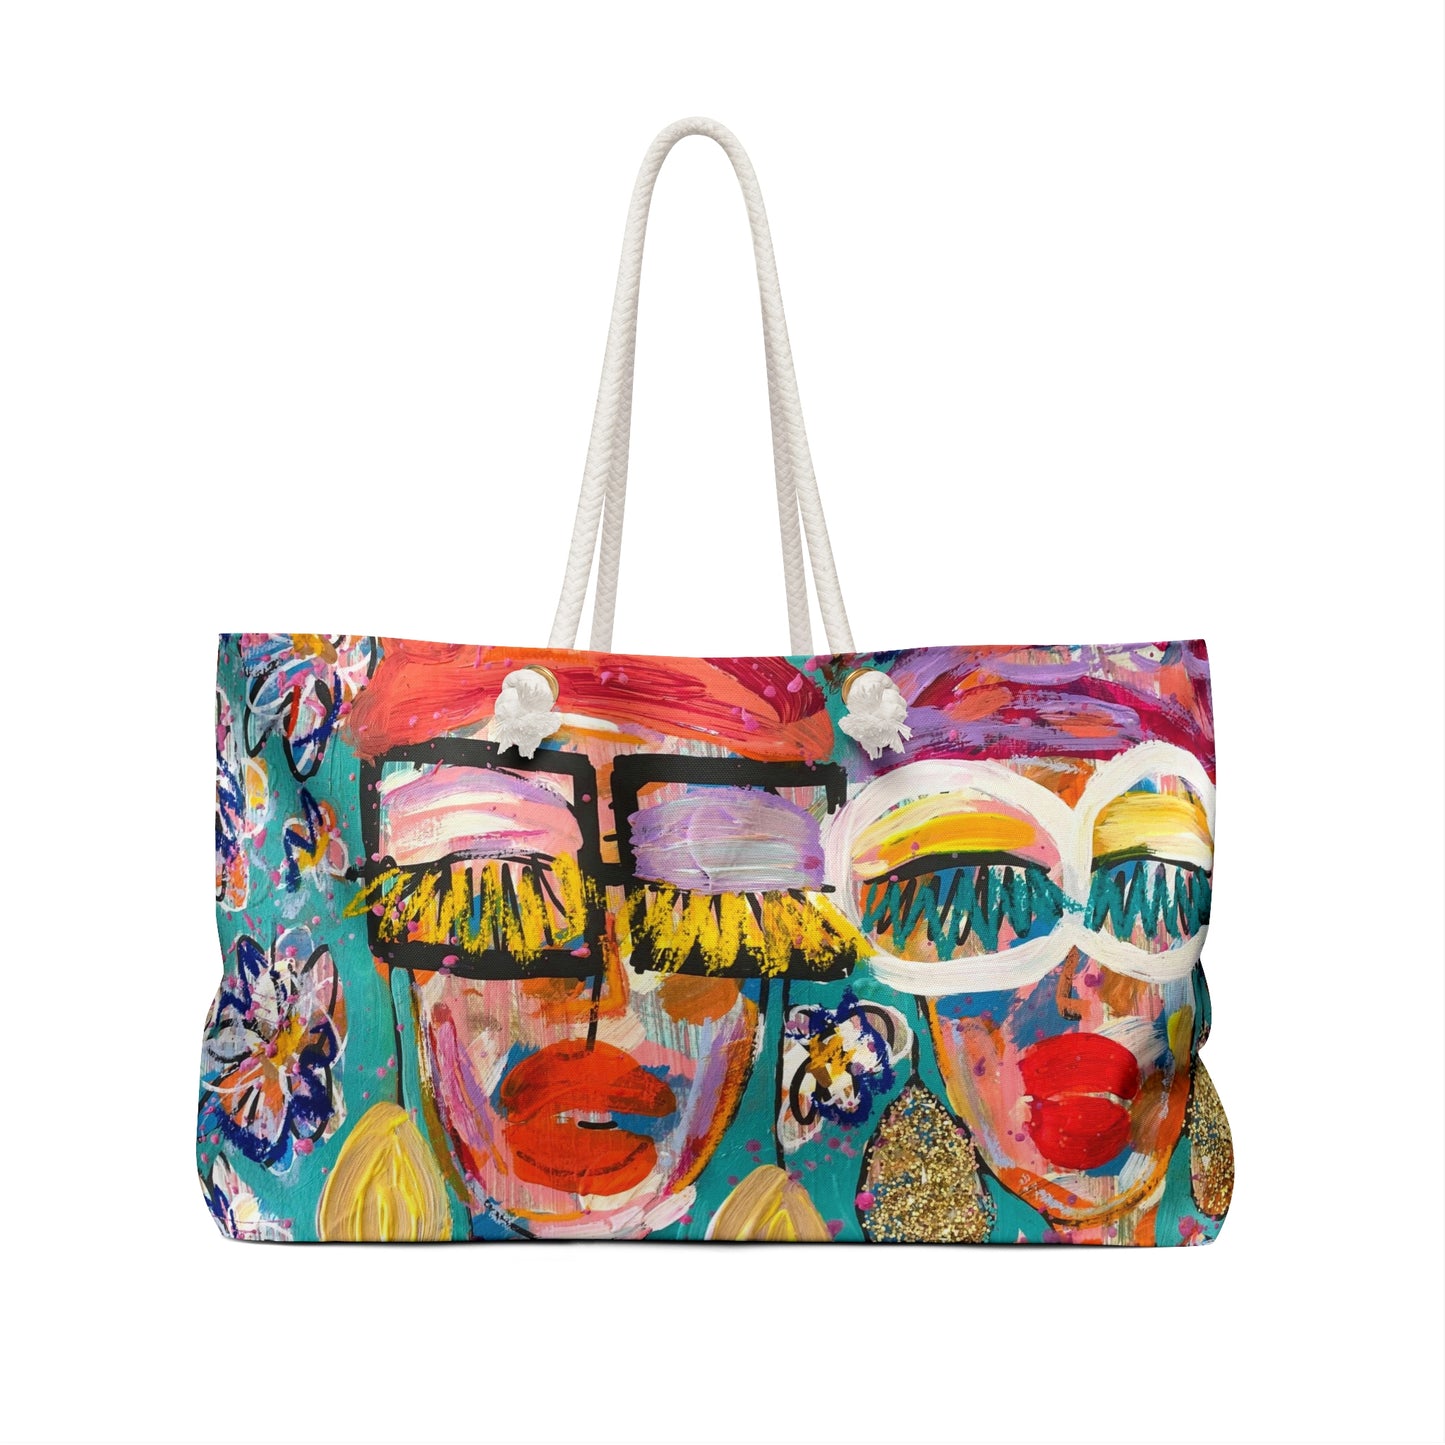 "May Flowers" Girl Talk Art Series Weekender Bag